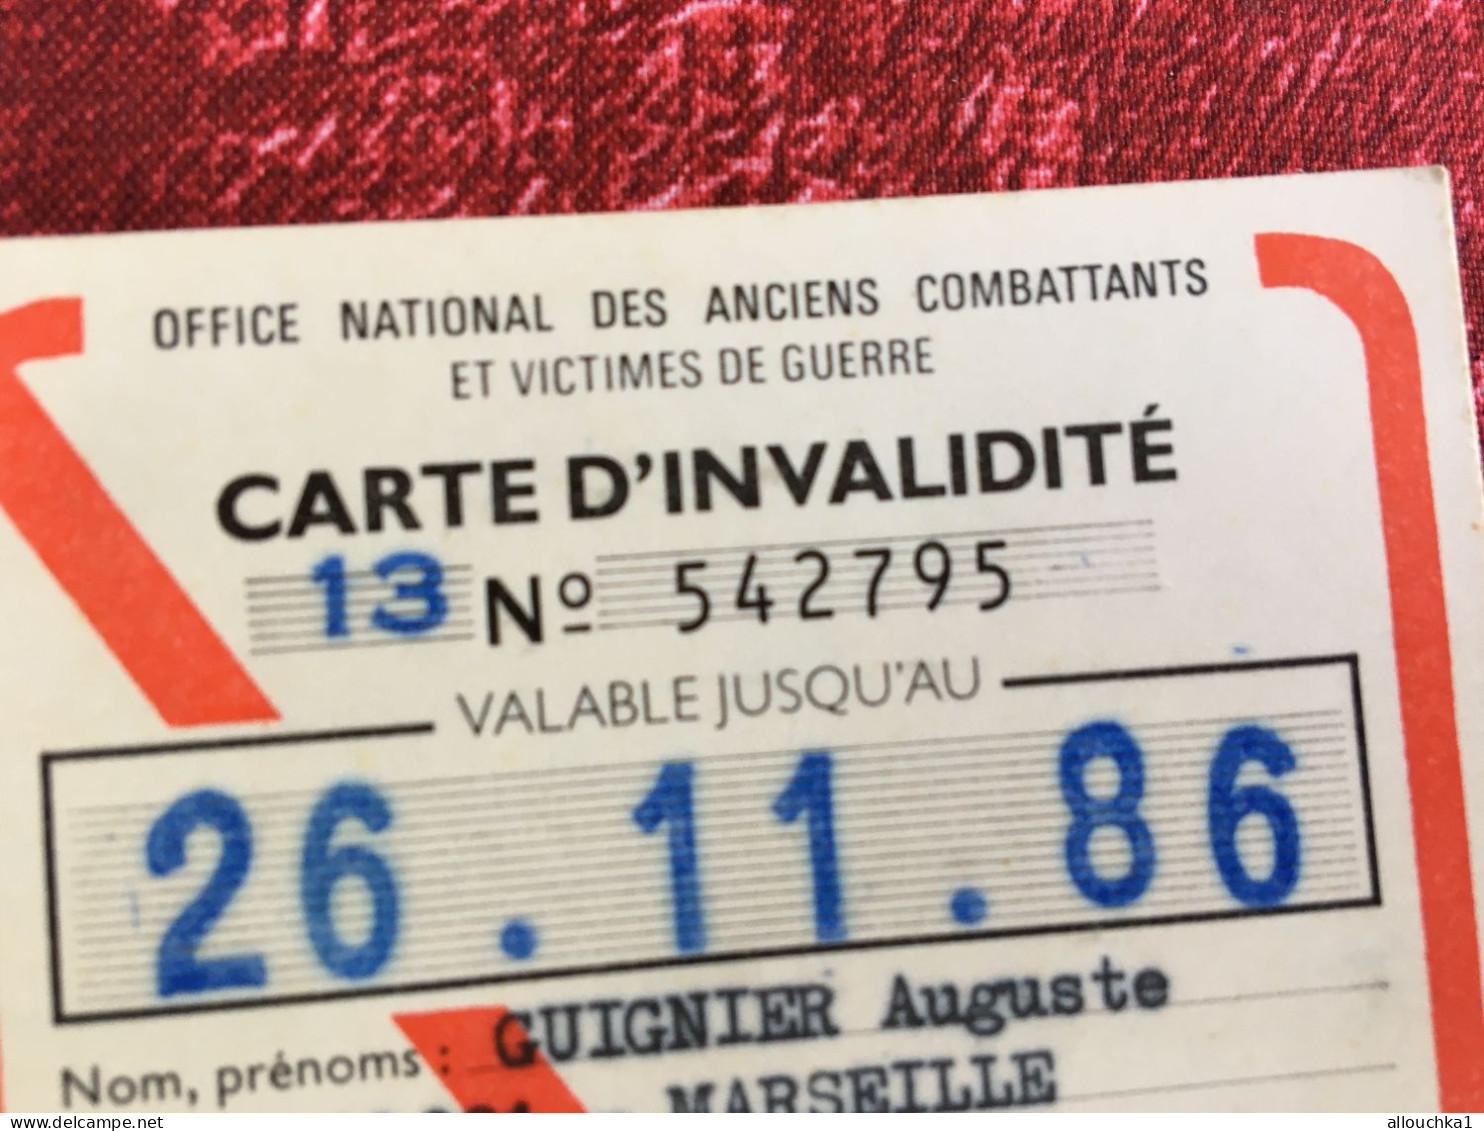 Office National Ancien Combatant Carte Invalidité Réduction 75% Station Debout Pénible-SNCF-circulation-Titre Transport - Europe